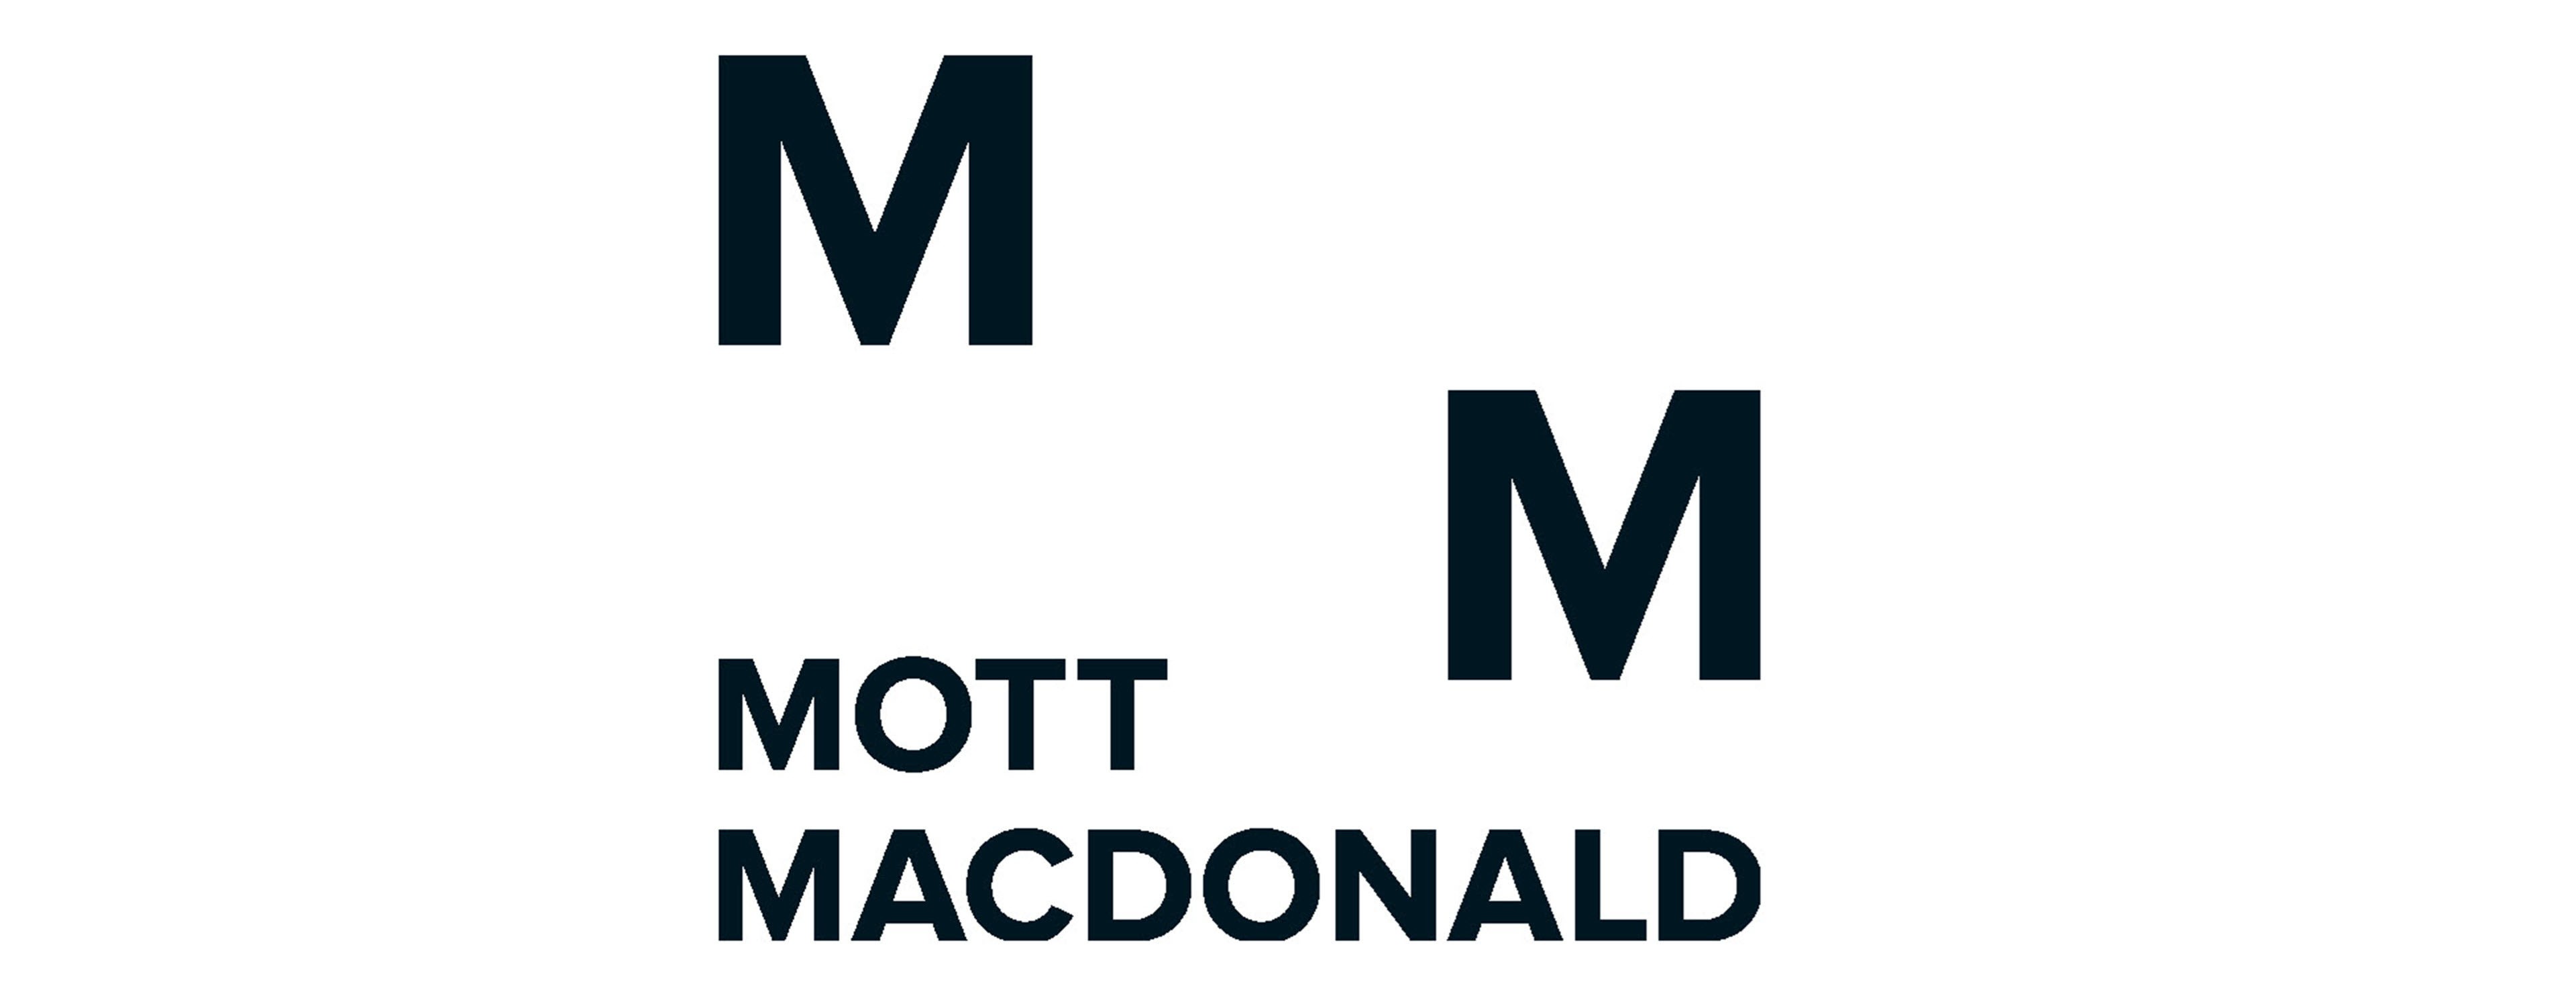 Logotipo de MM